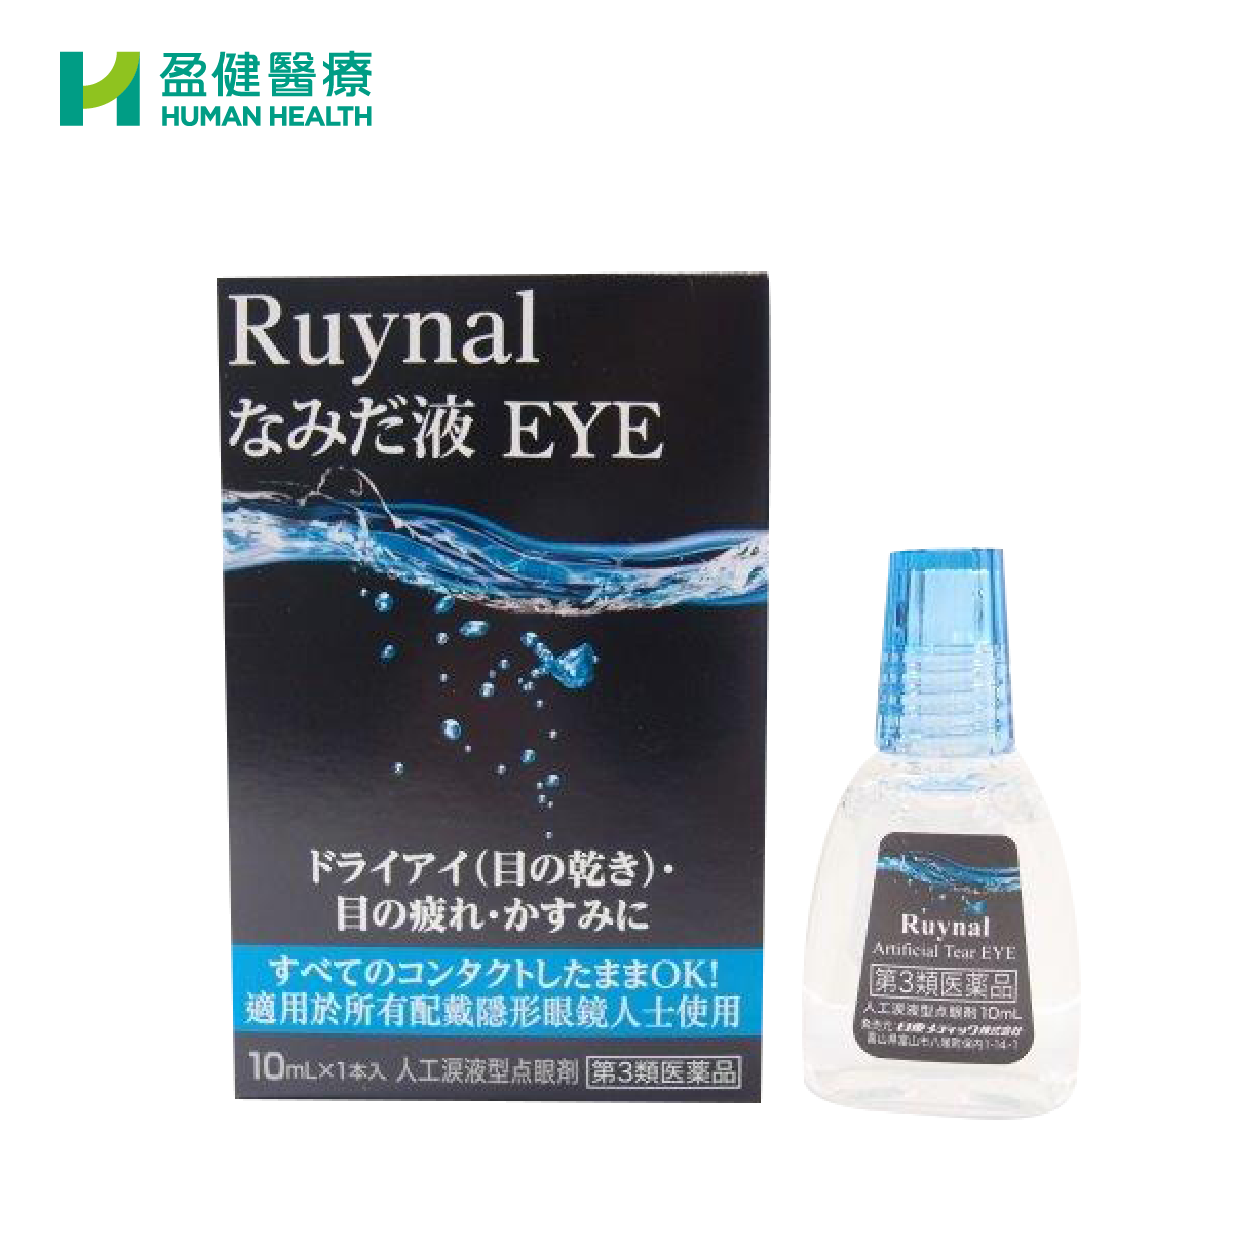 RUYNAL 人工淚液型眼藥水 (H-RUY001) - 盈健醫療 - 搜羅不同類型健康產品及服務 為您的健康增值